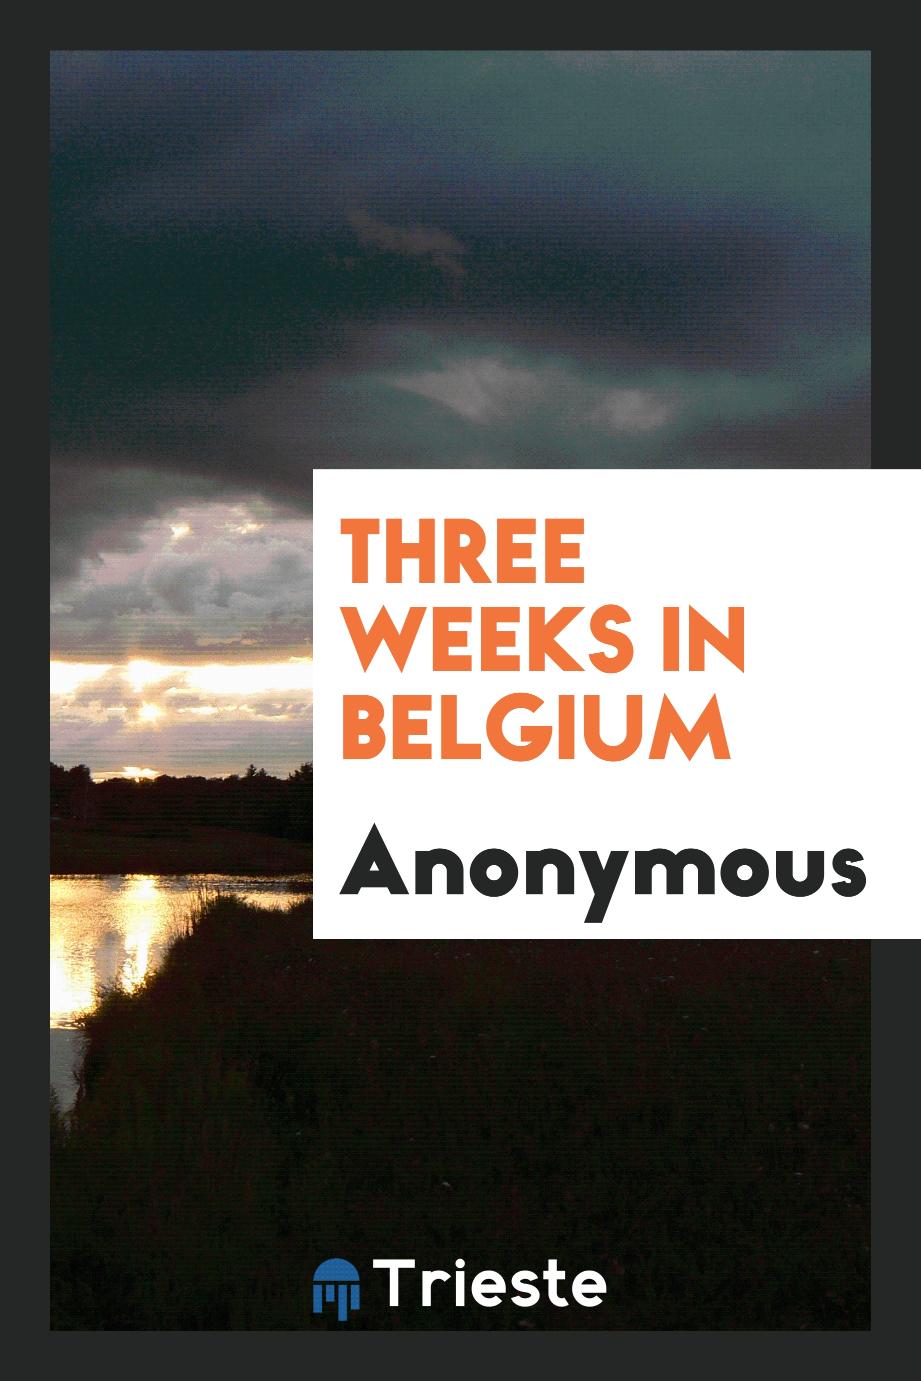 Three weeks in Belgium